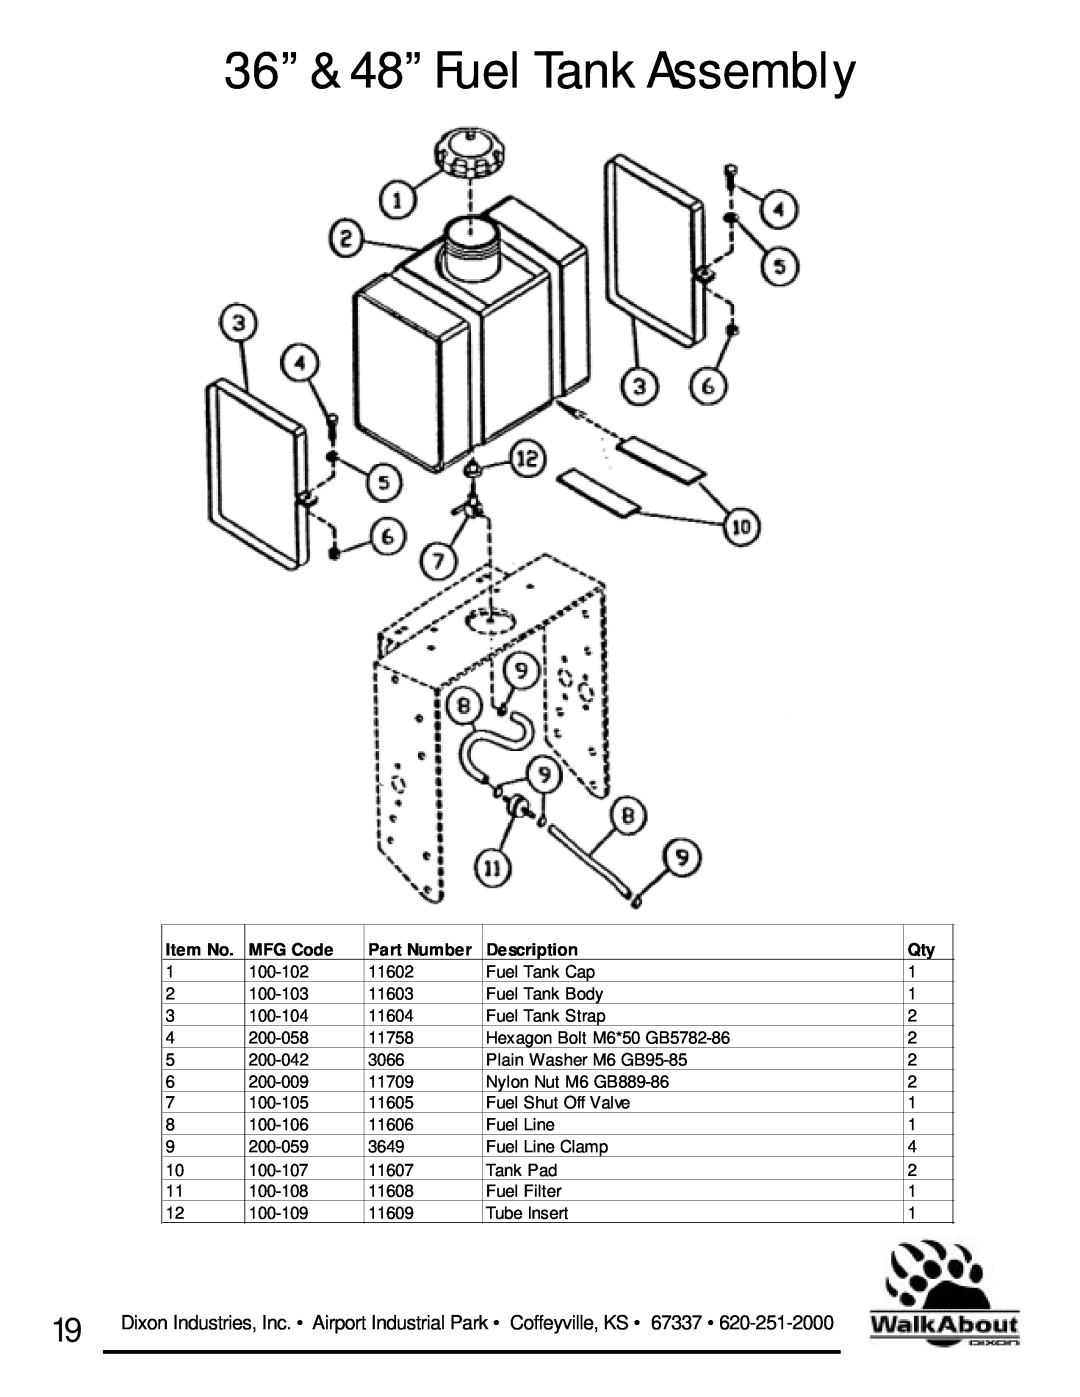 Dixon 36 & 48 owner manual 36” & 48” Fuel Tank Assembly, Item No, MFG Code, Part Number, Description 